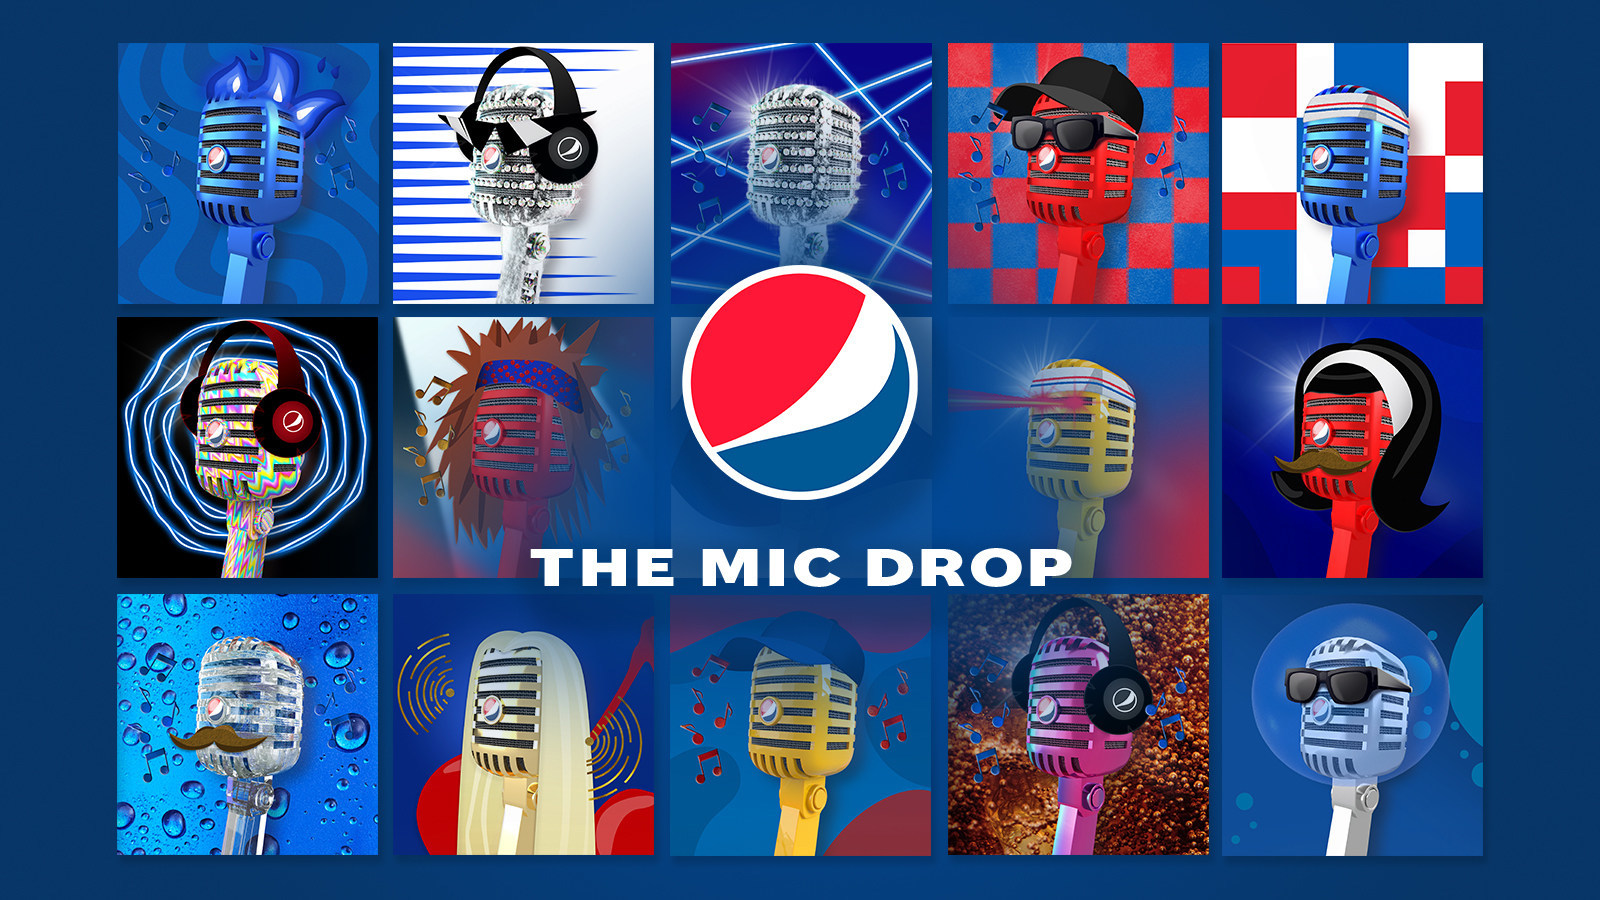 Pepsi The Mic Drop